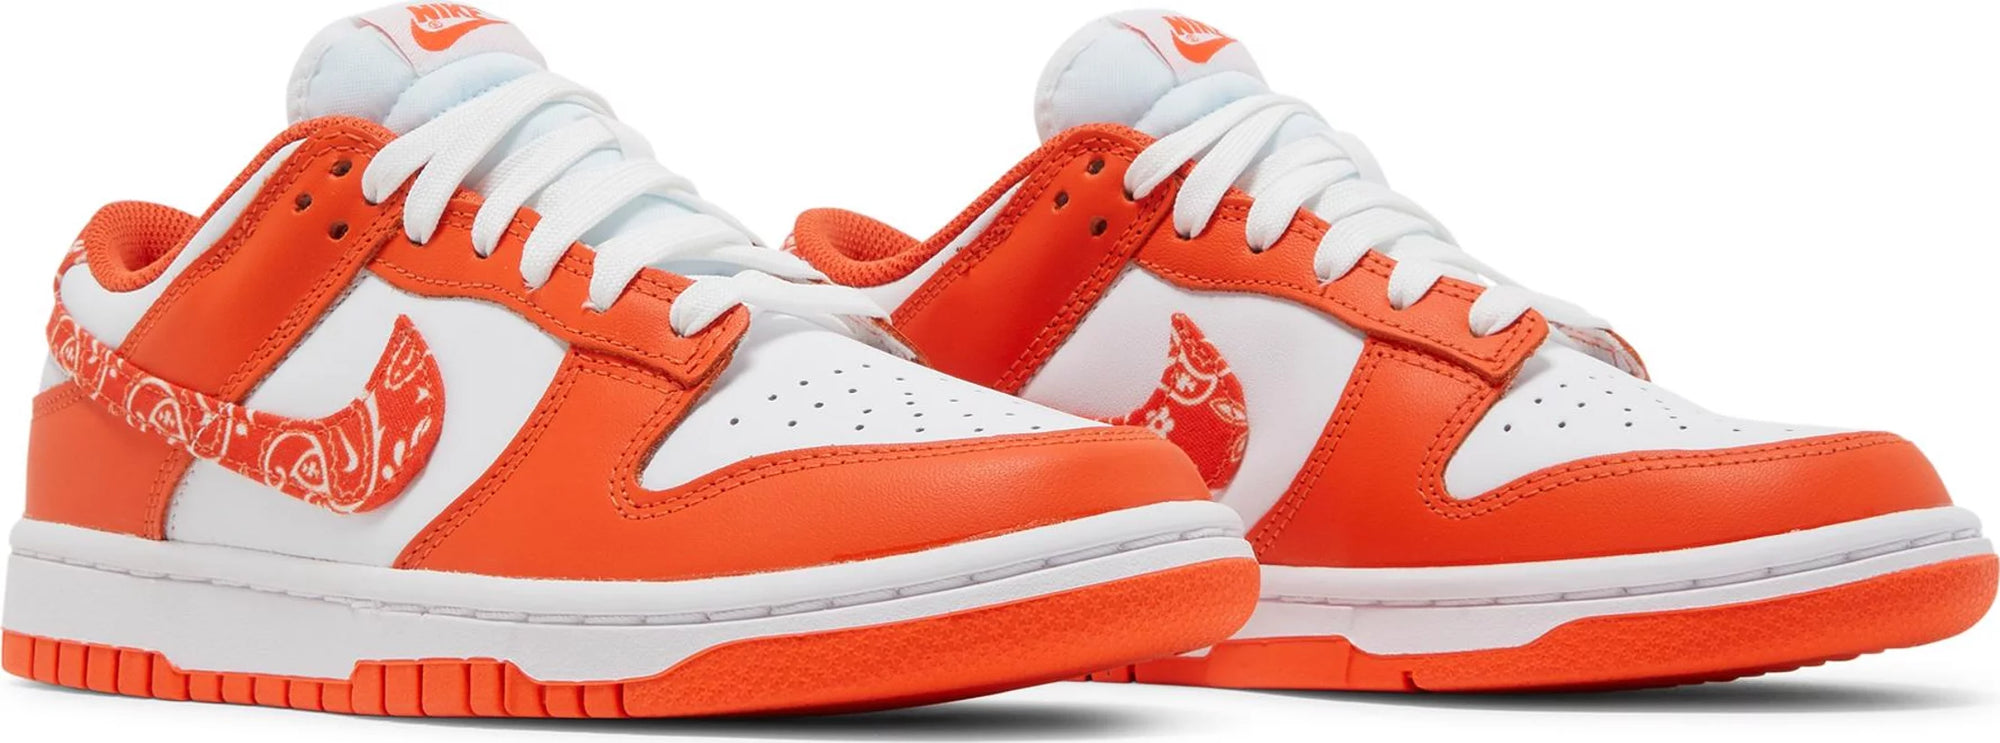 Nike Dunk Low - Orange Paisley